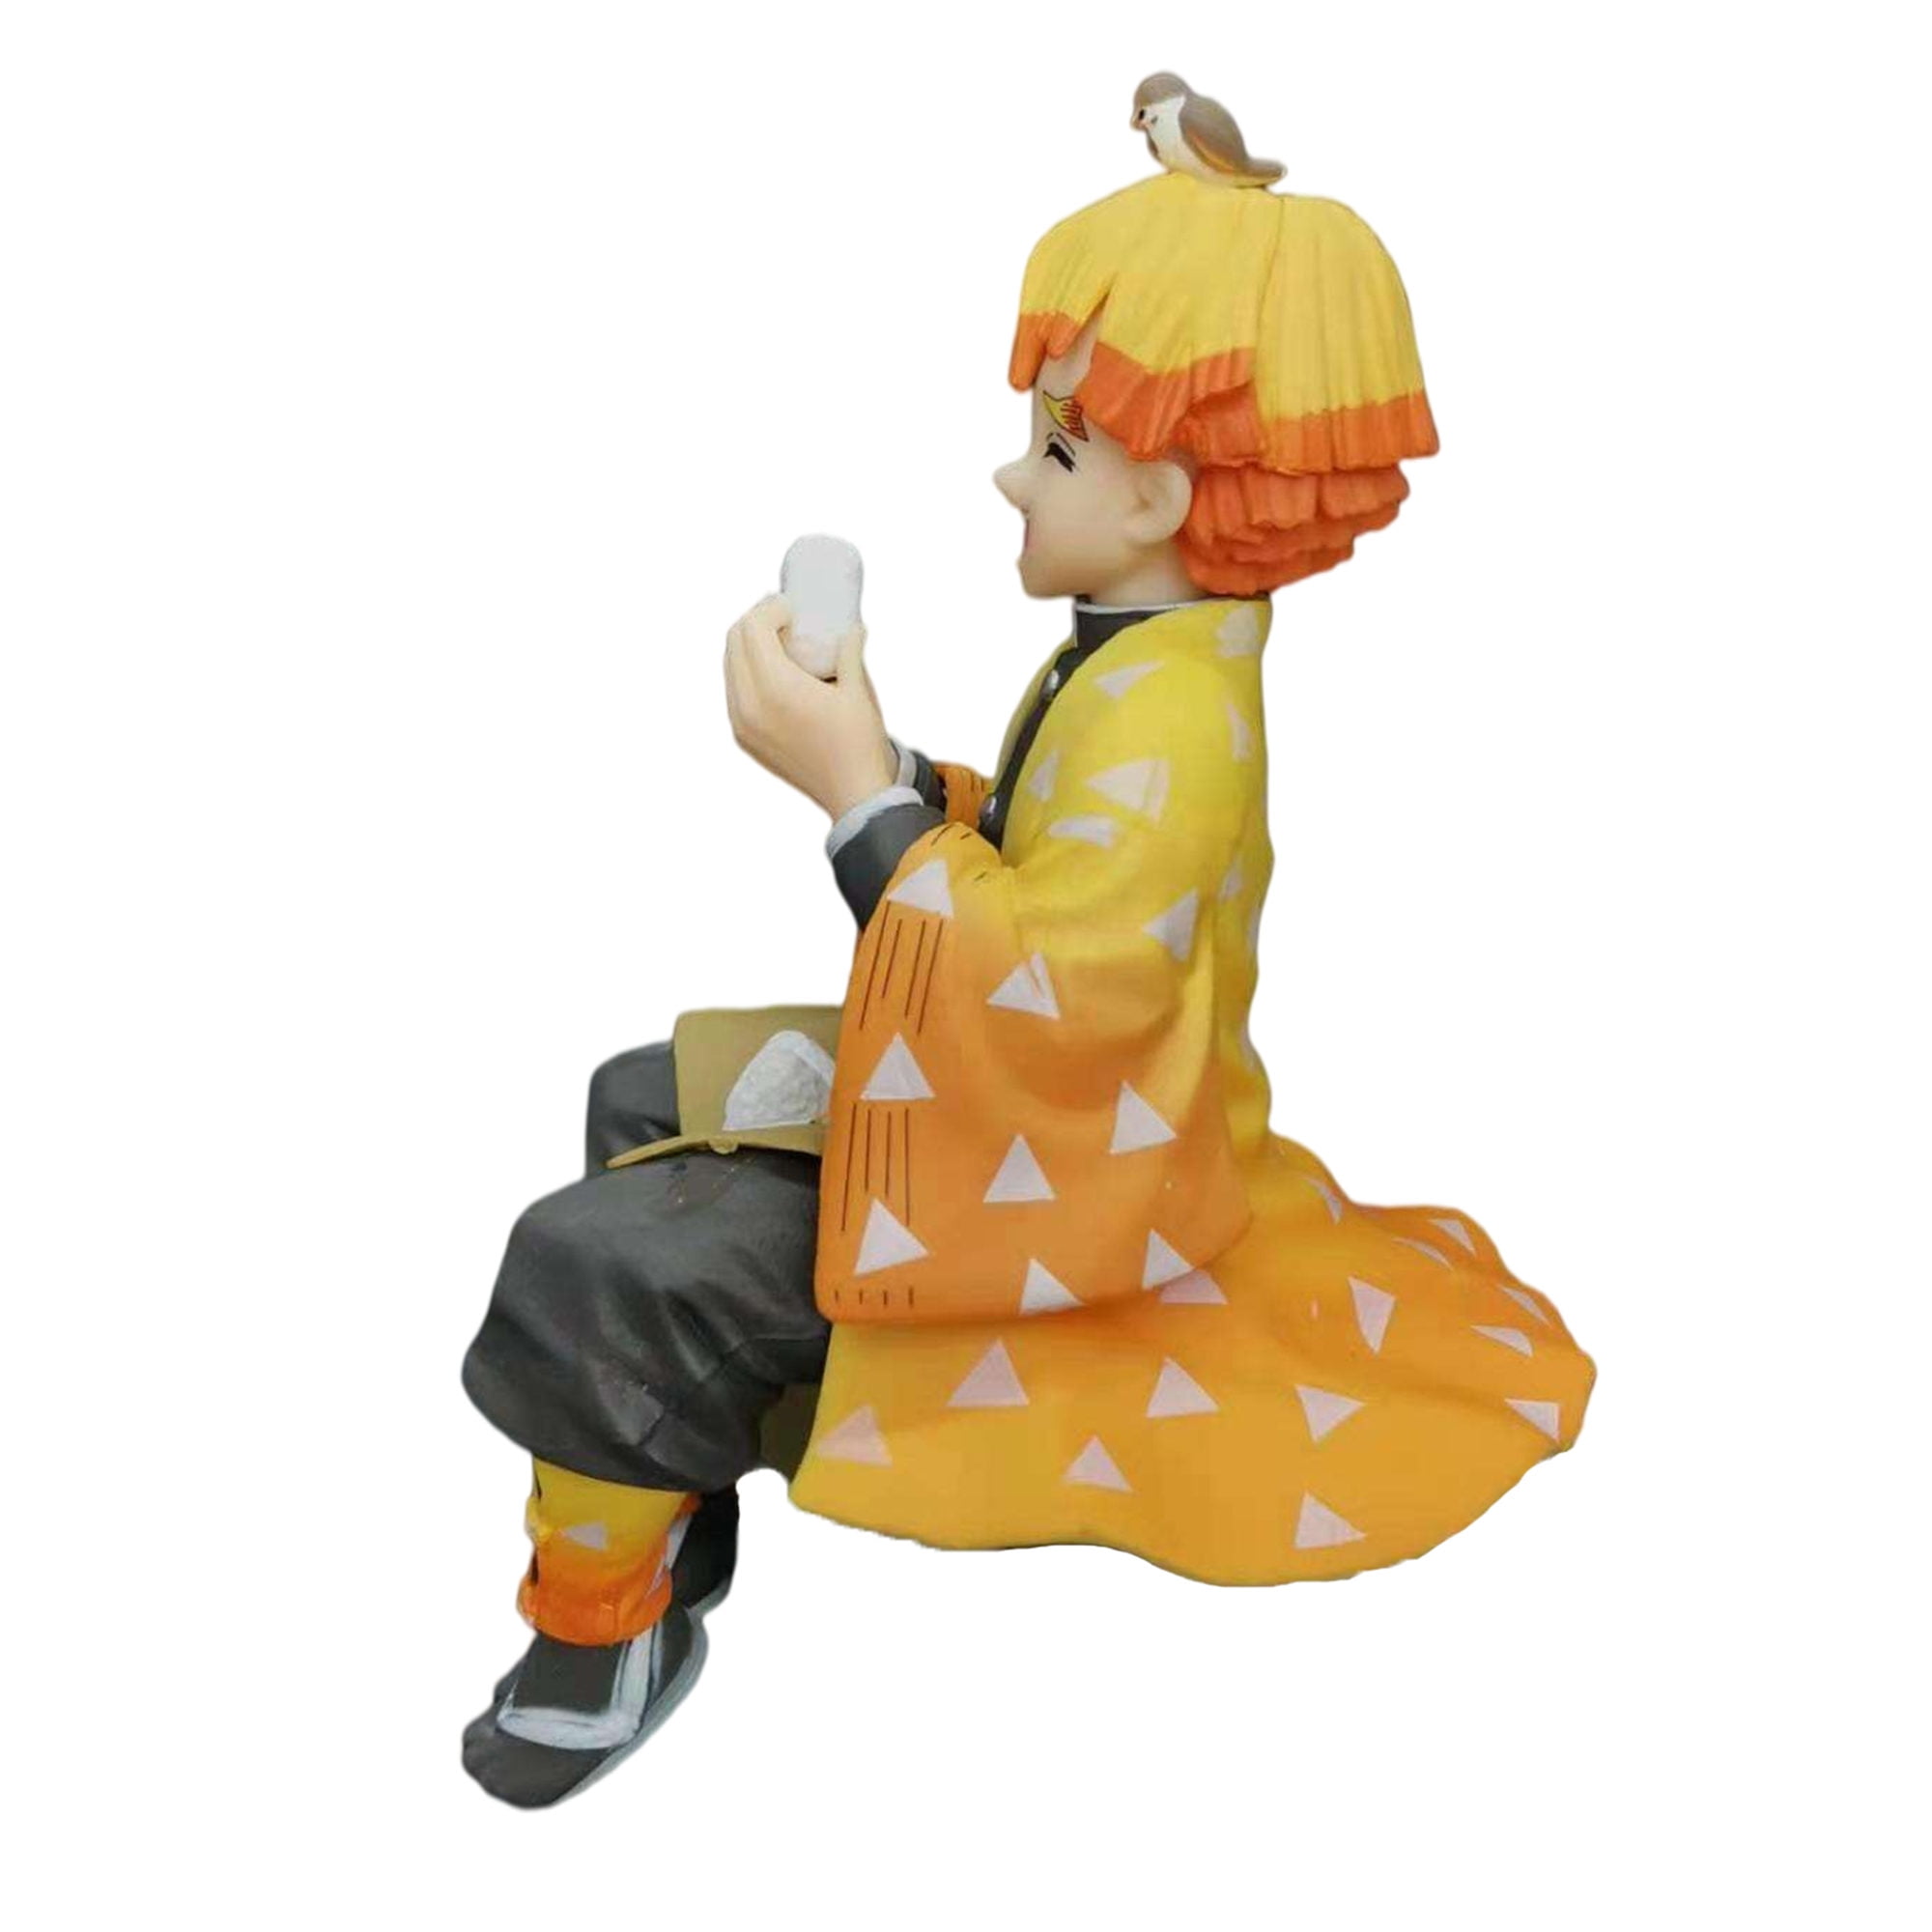 zenitsu eating rice ball  NINJAMO Zenitsu Agatsuma Rice Ball PVC Figure  Anime Demon Figure Anime Toy Statue Sitting Pose